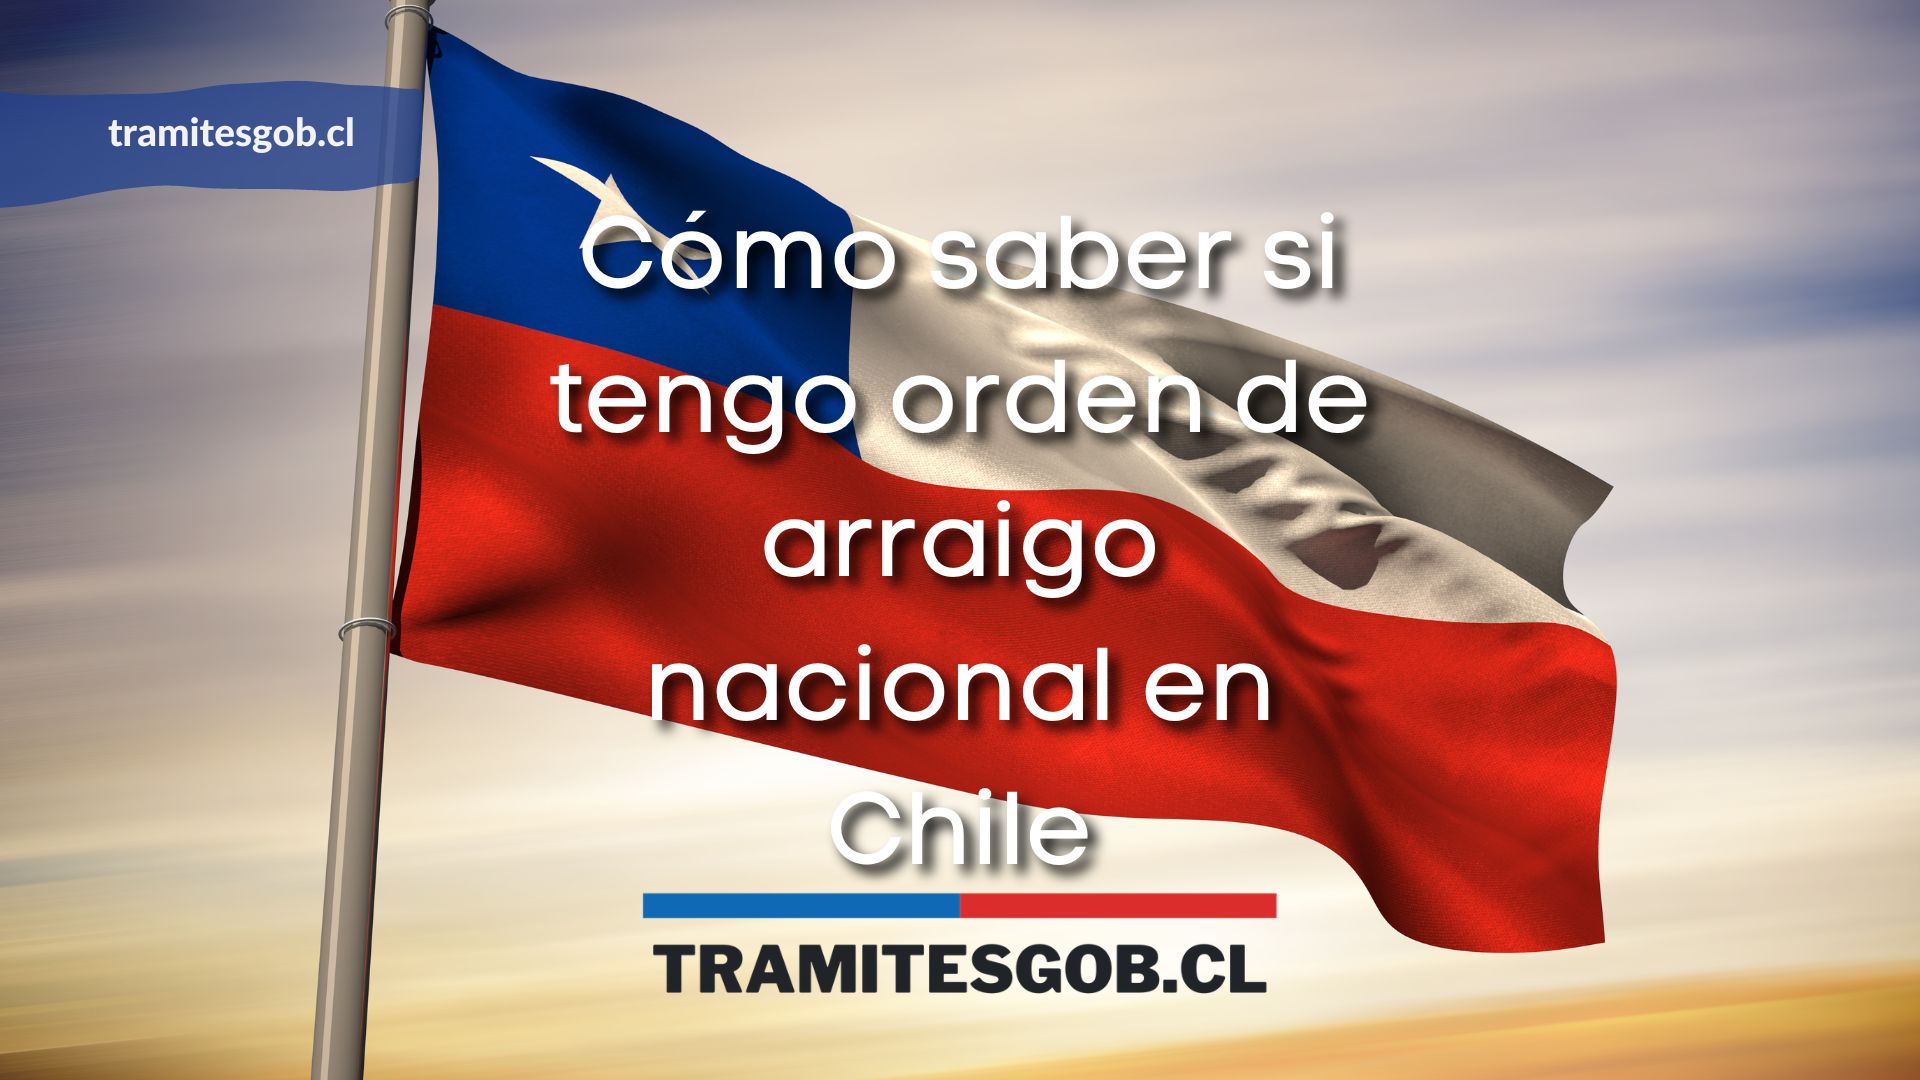 Cómo saber si tengo orden de arraigo nacional en Chile